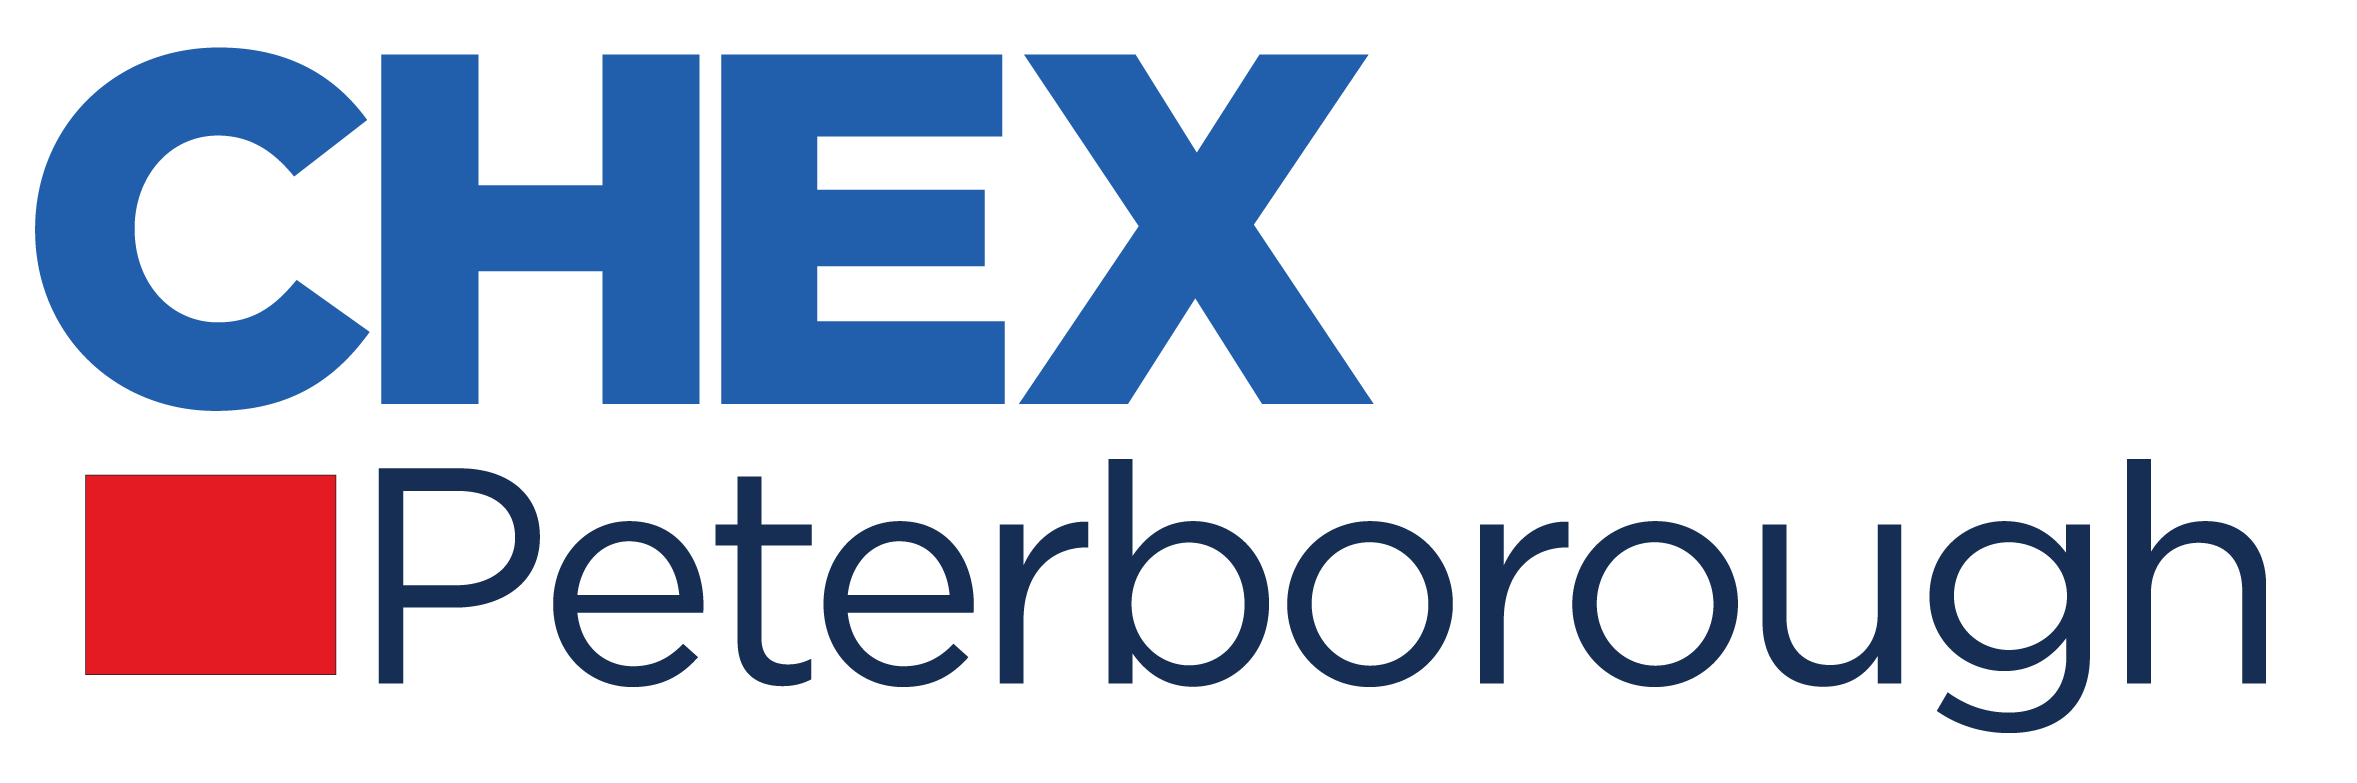 Chex Logo - CHEX Ptbo Logo Blue Haliburton Children's Foundation